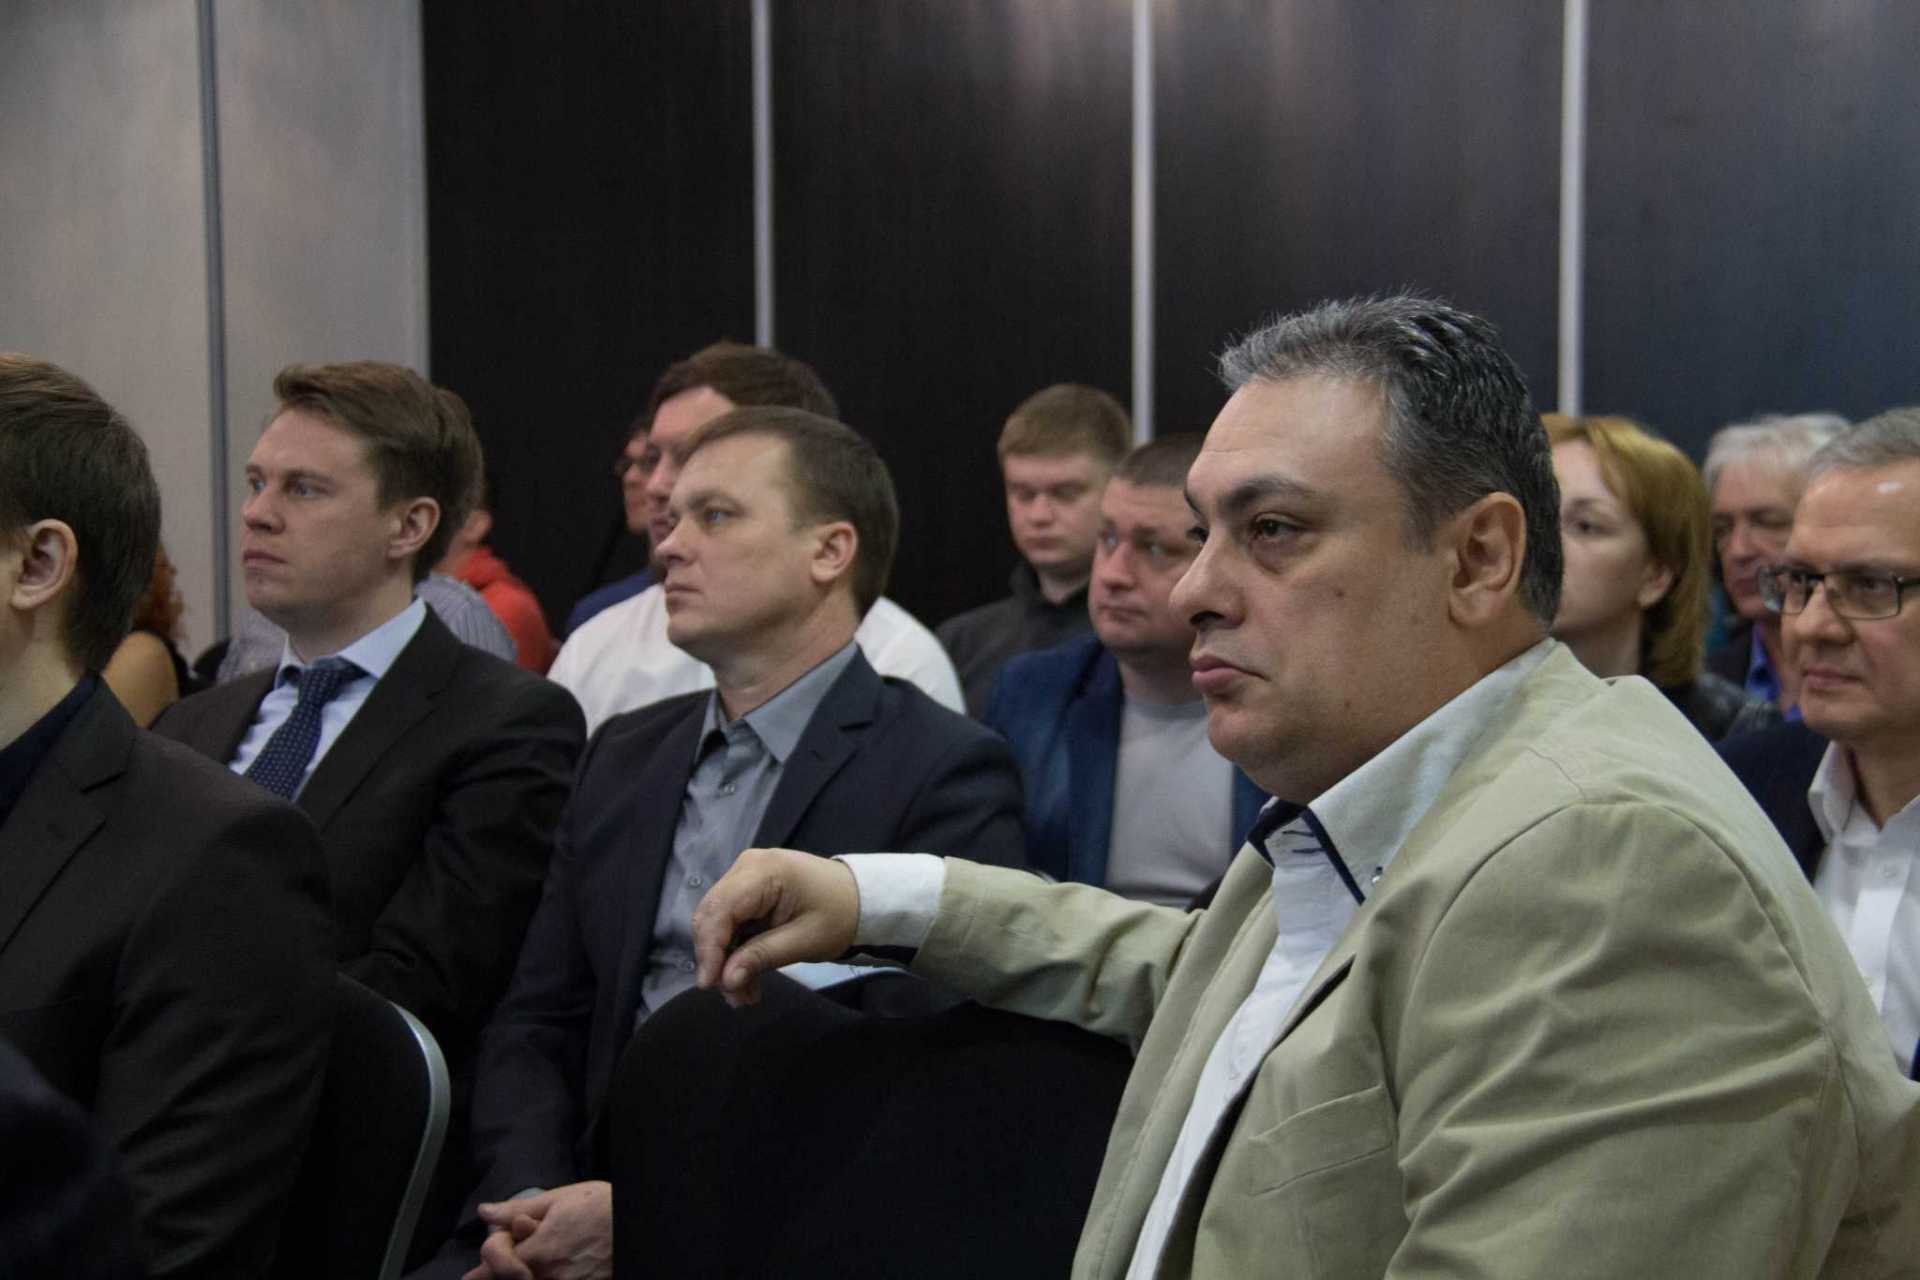 Встреча членов Клуба успешных предпринимателей в Одинцово